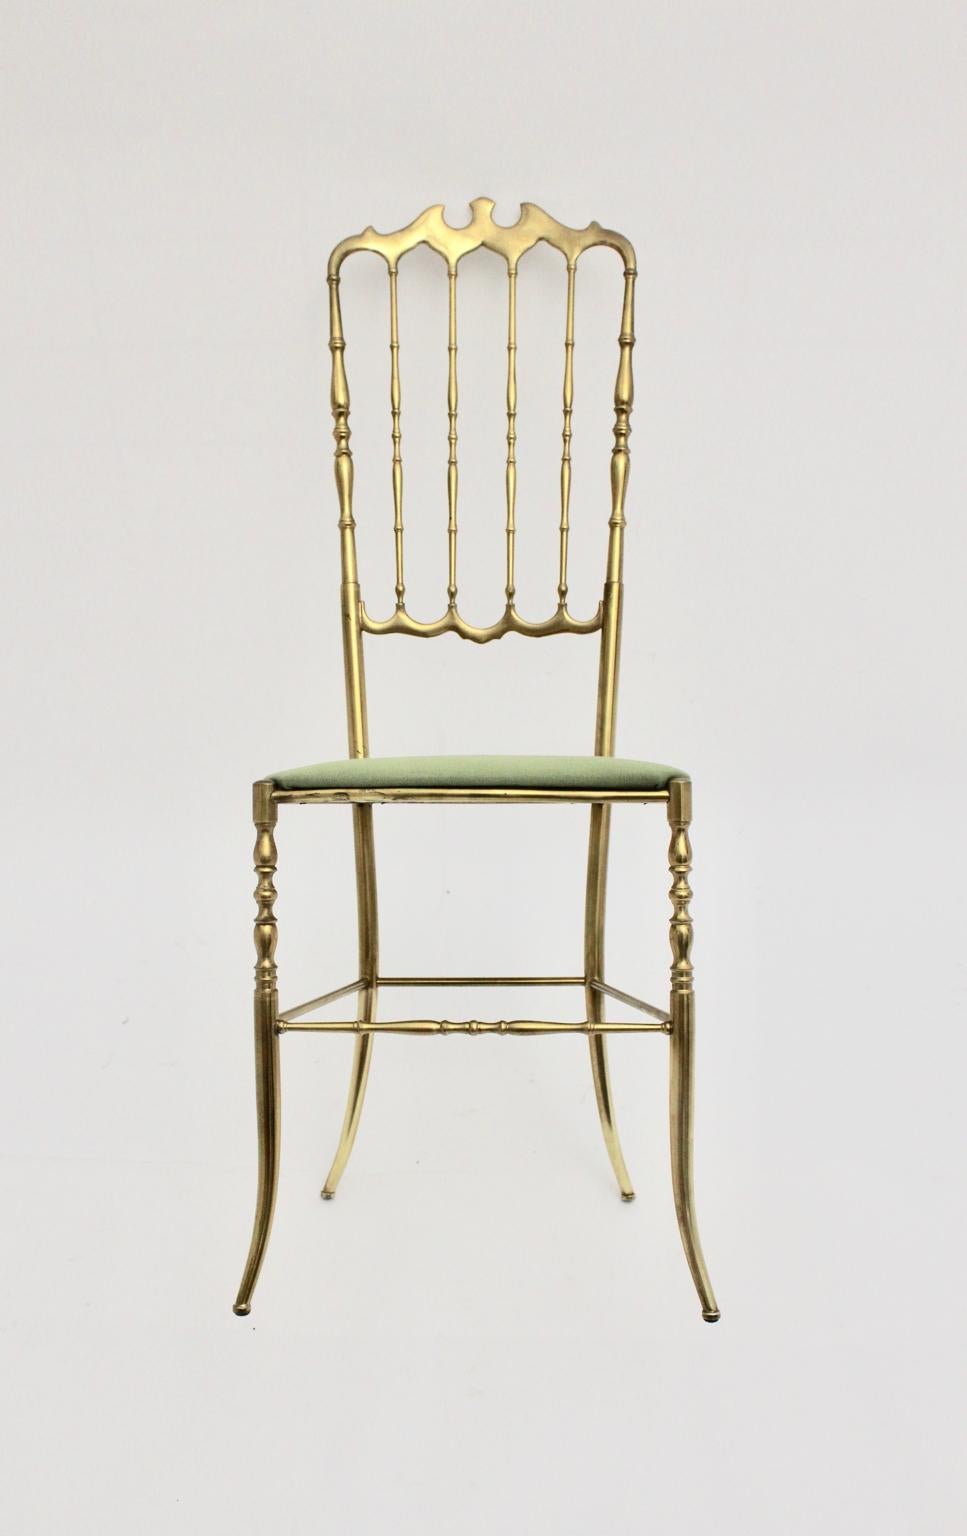 Mid Century Modern entzückender Vintage-Chiavari-Sessel aus Messing, 1950er Jahre, Italien, mit Messinggestell und Sitzfläche, die neu mit grünem Textilstoff bezogen ist.
Der alte Zustand ist sehr gut.
Ungefähre Maße:
Breite 42 cm
Tiefe 41 cm
Höhe